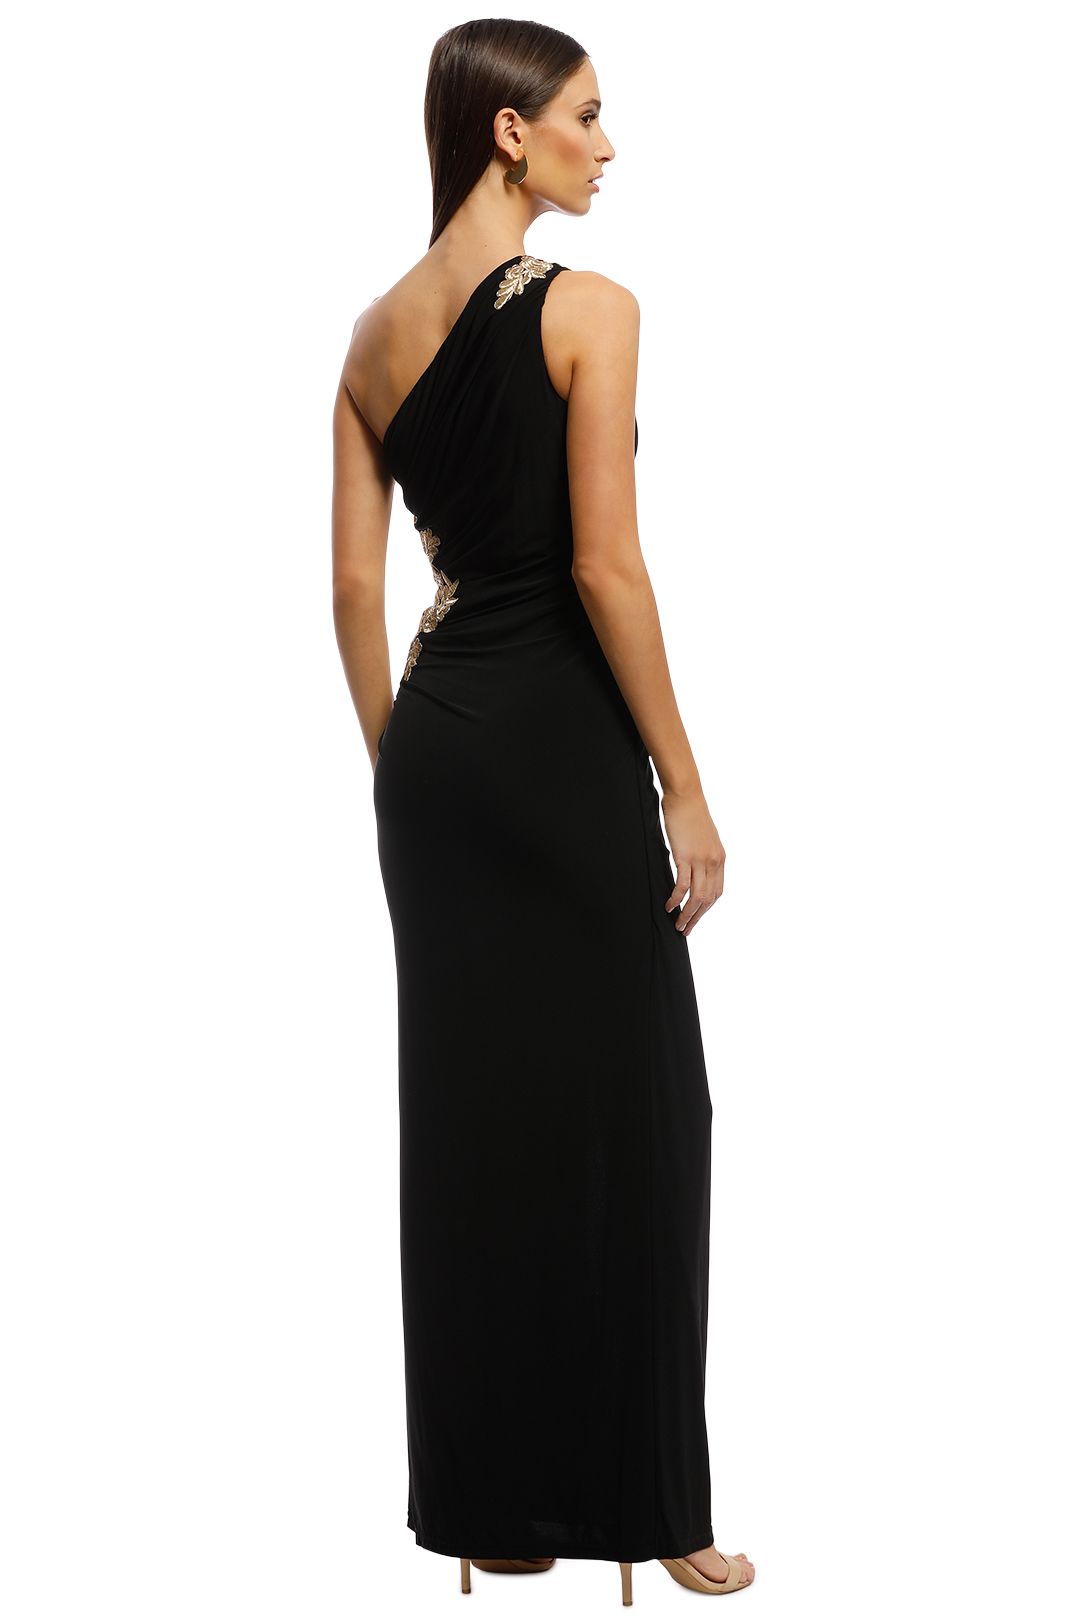 Montique - Donatella Applique Gown - Black - Back